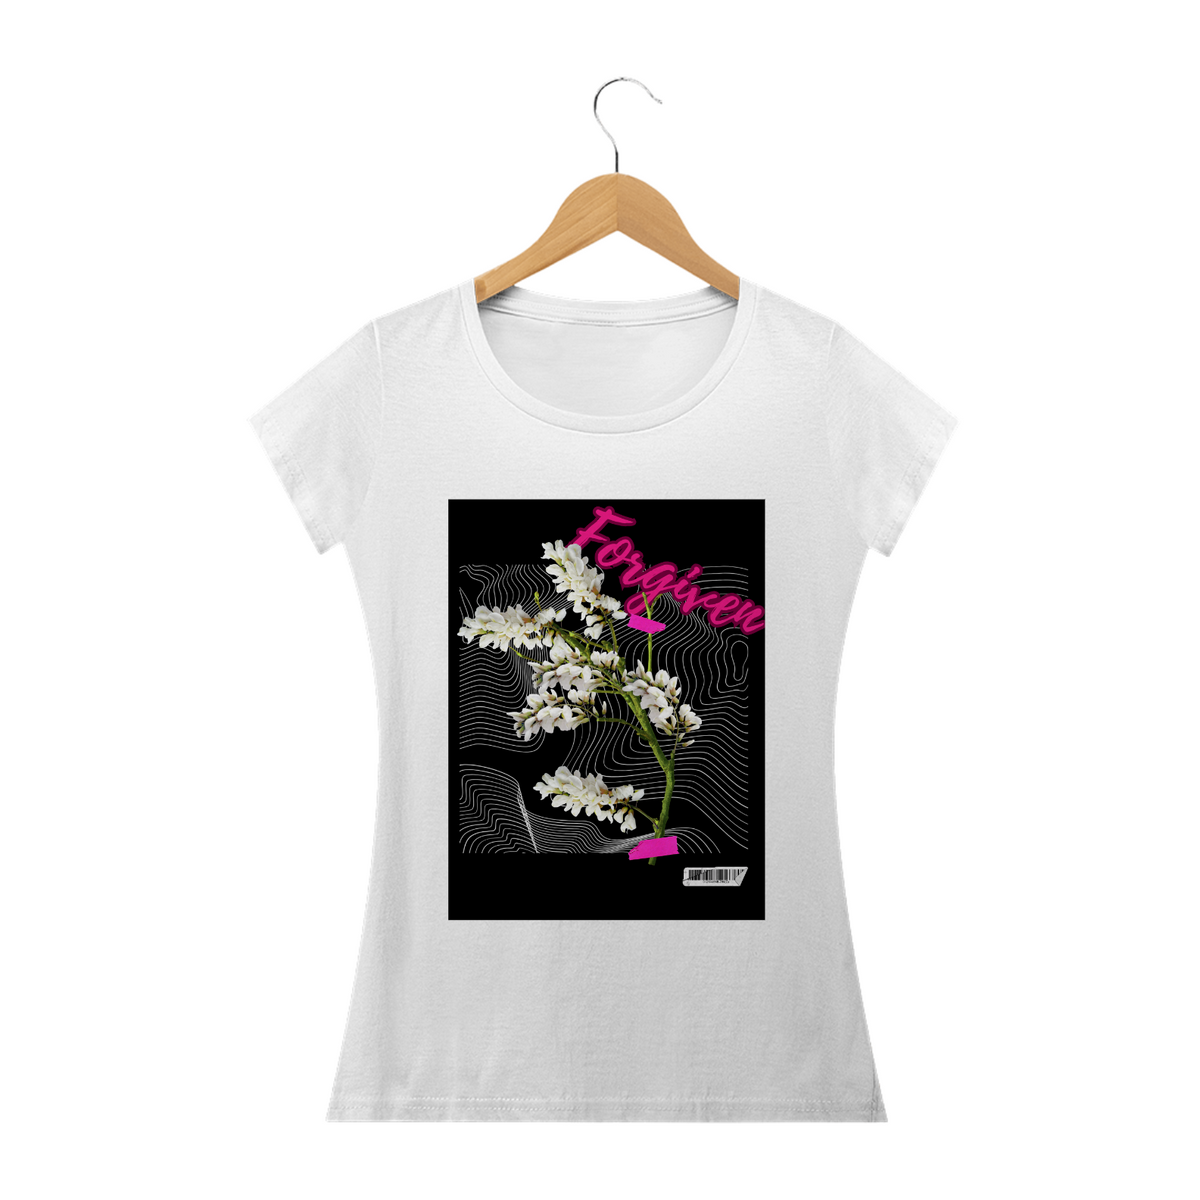 Nome do produto: T-shirt flower forgiven